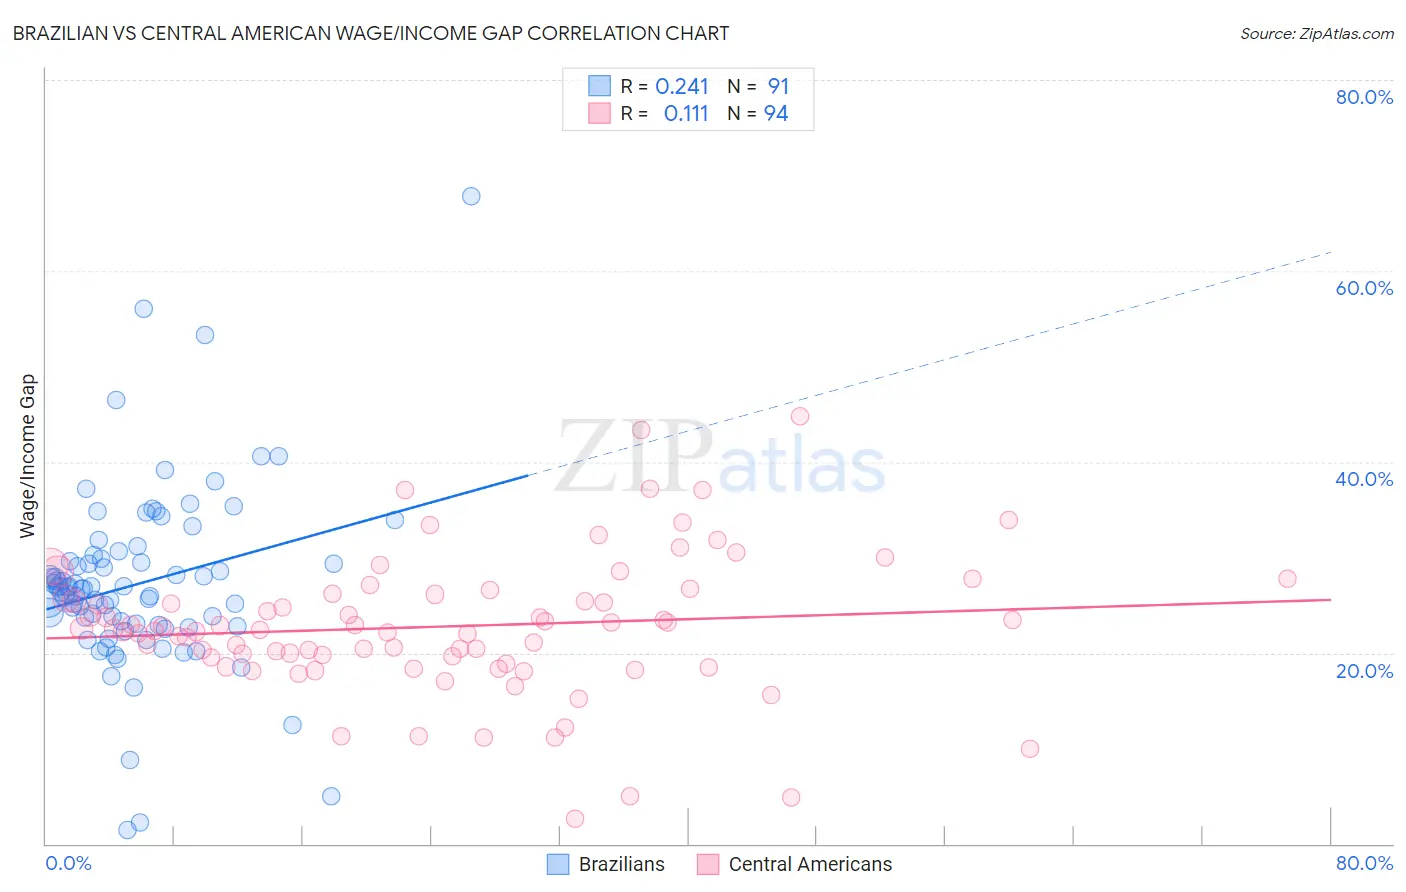 Brazilian vs Central American Wage/Income Gap